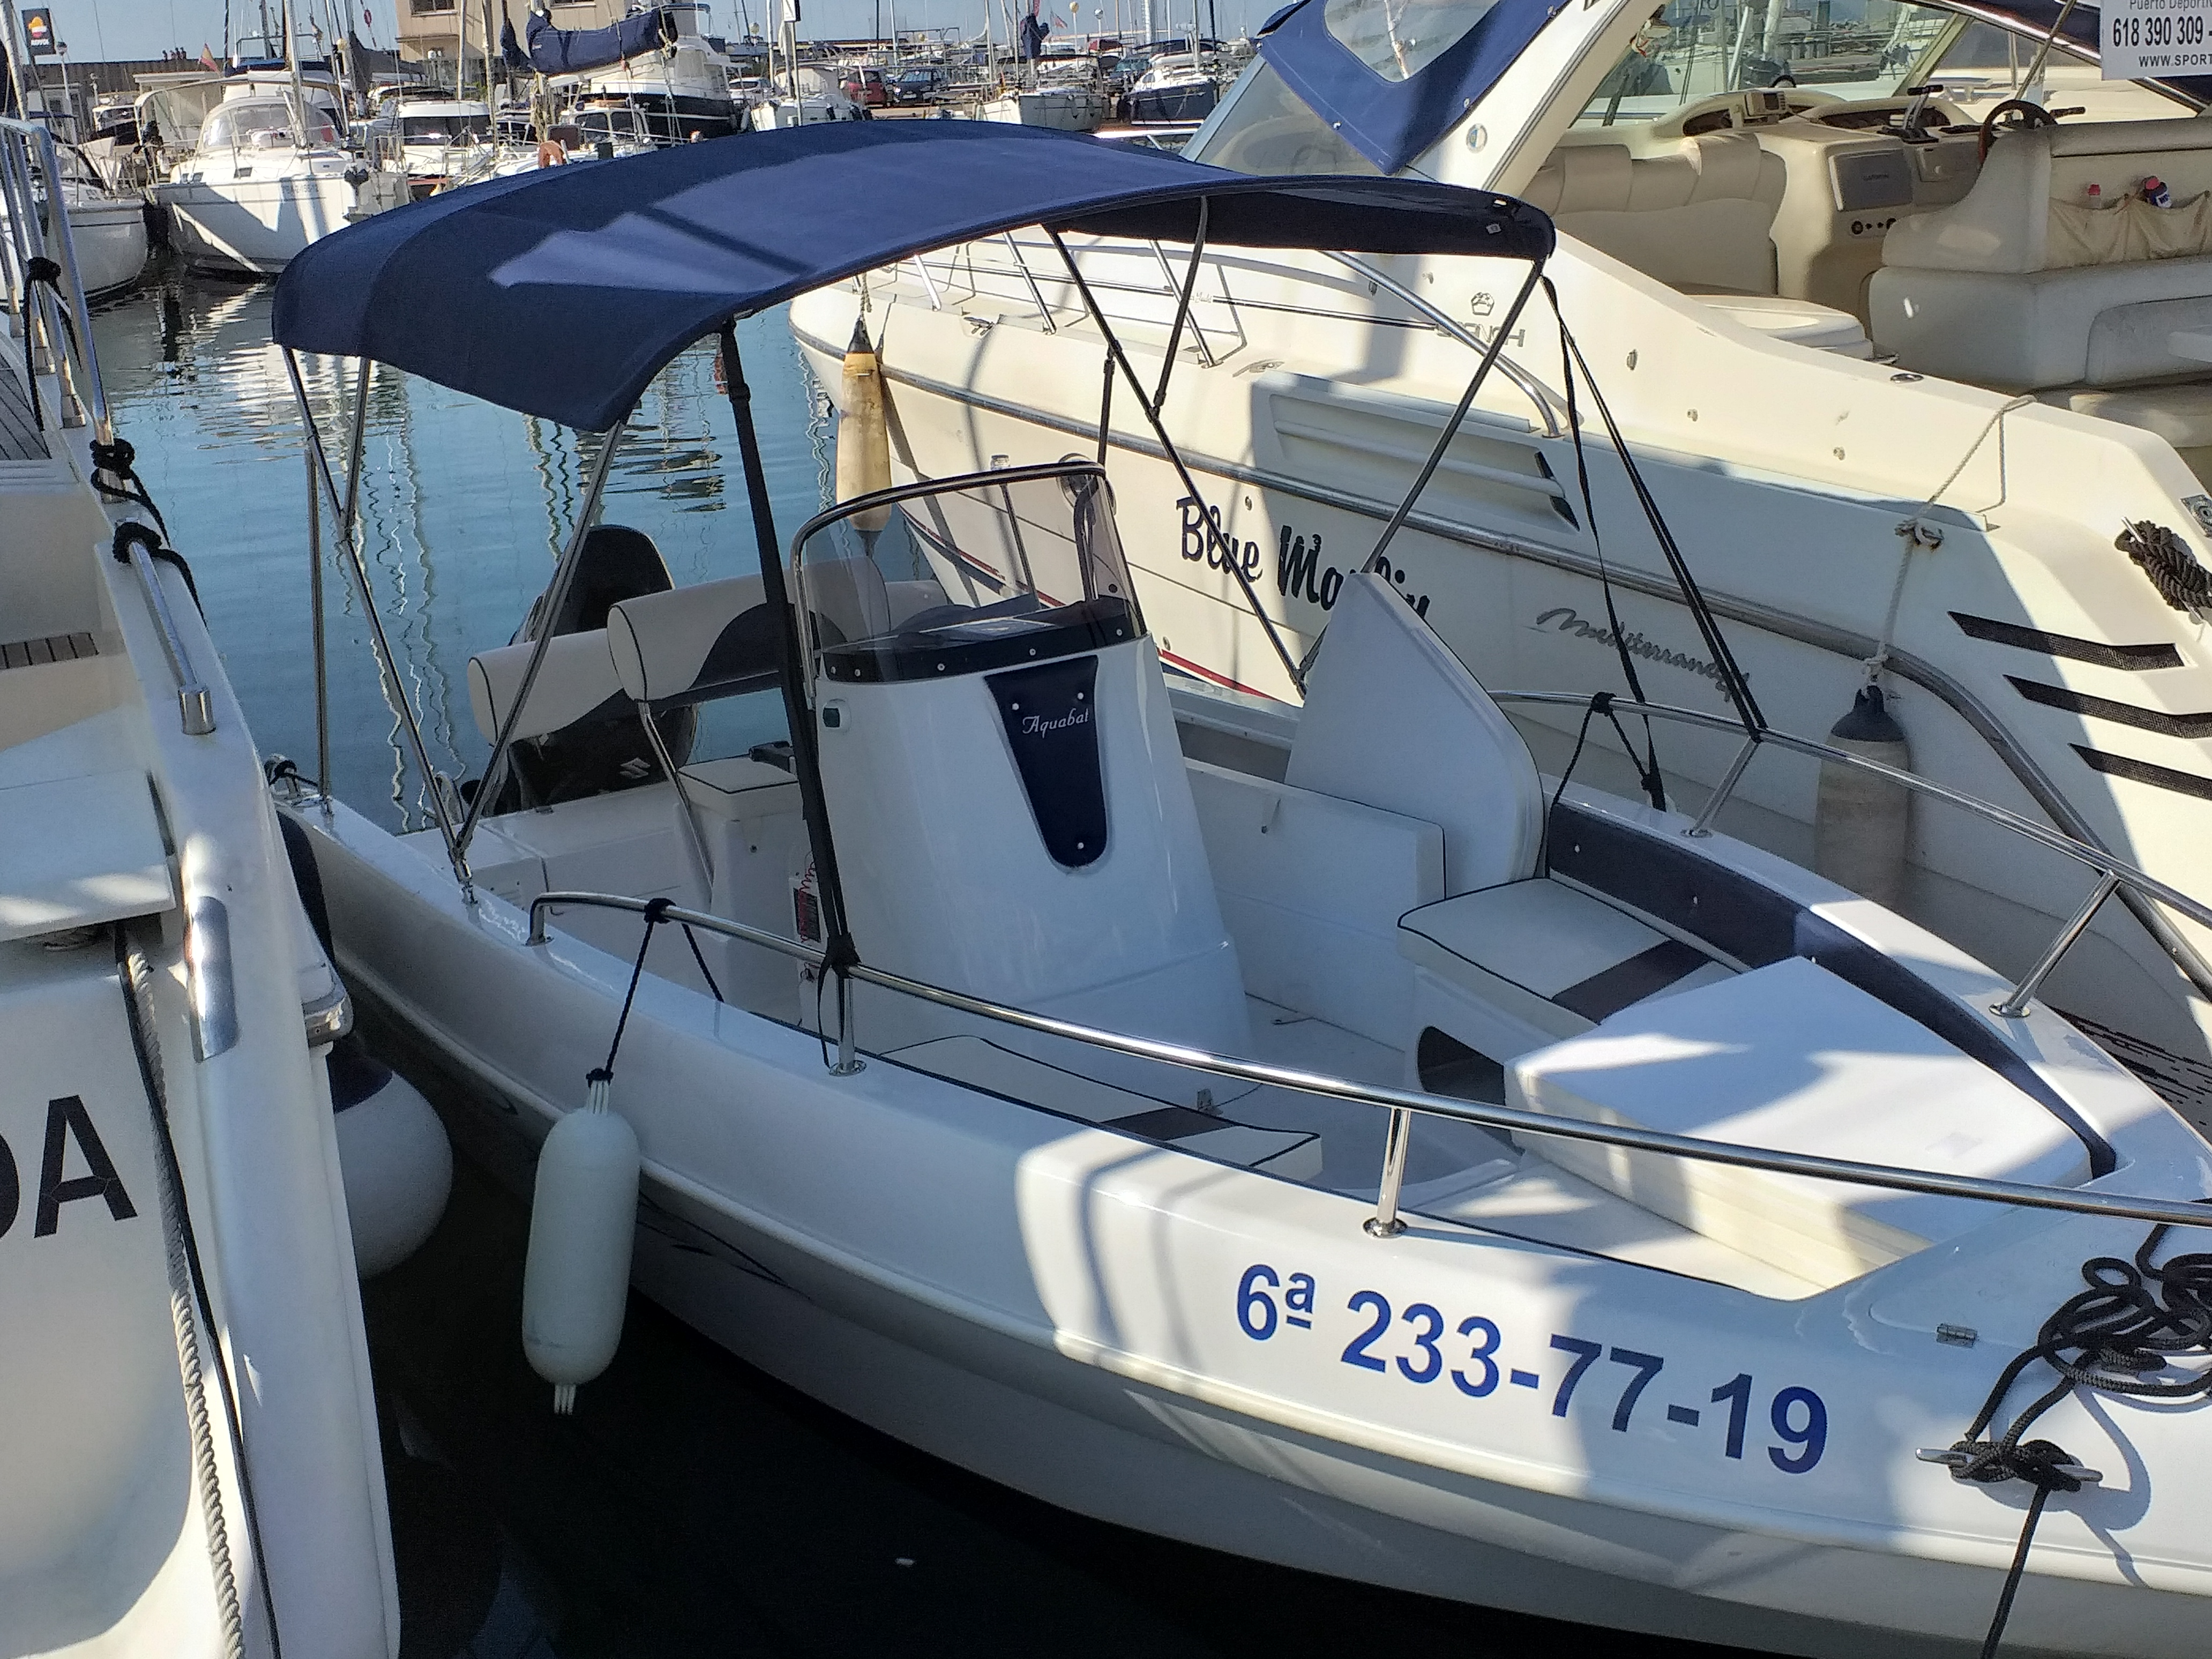 Barco de motor EN CHARTER, de la marca Aquabat modelo Sport Line 19 y del año 2019, disponible en Club de Vela de Blanes Blanes Girona España